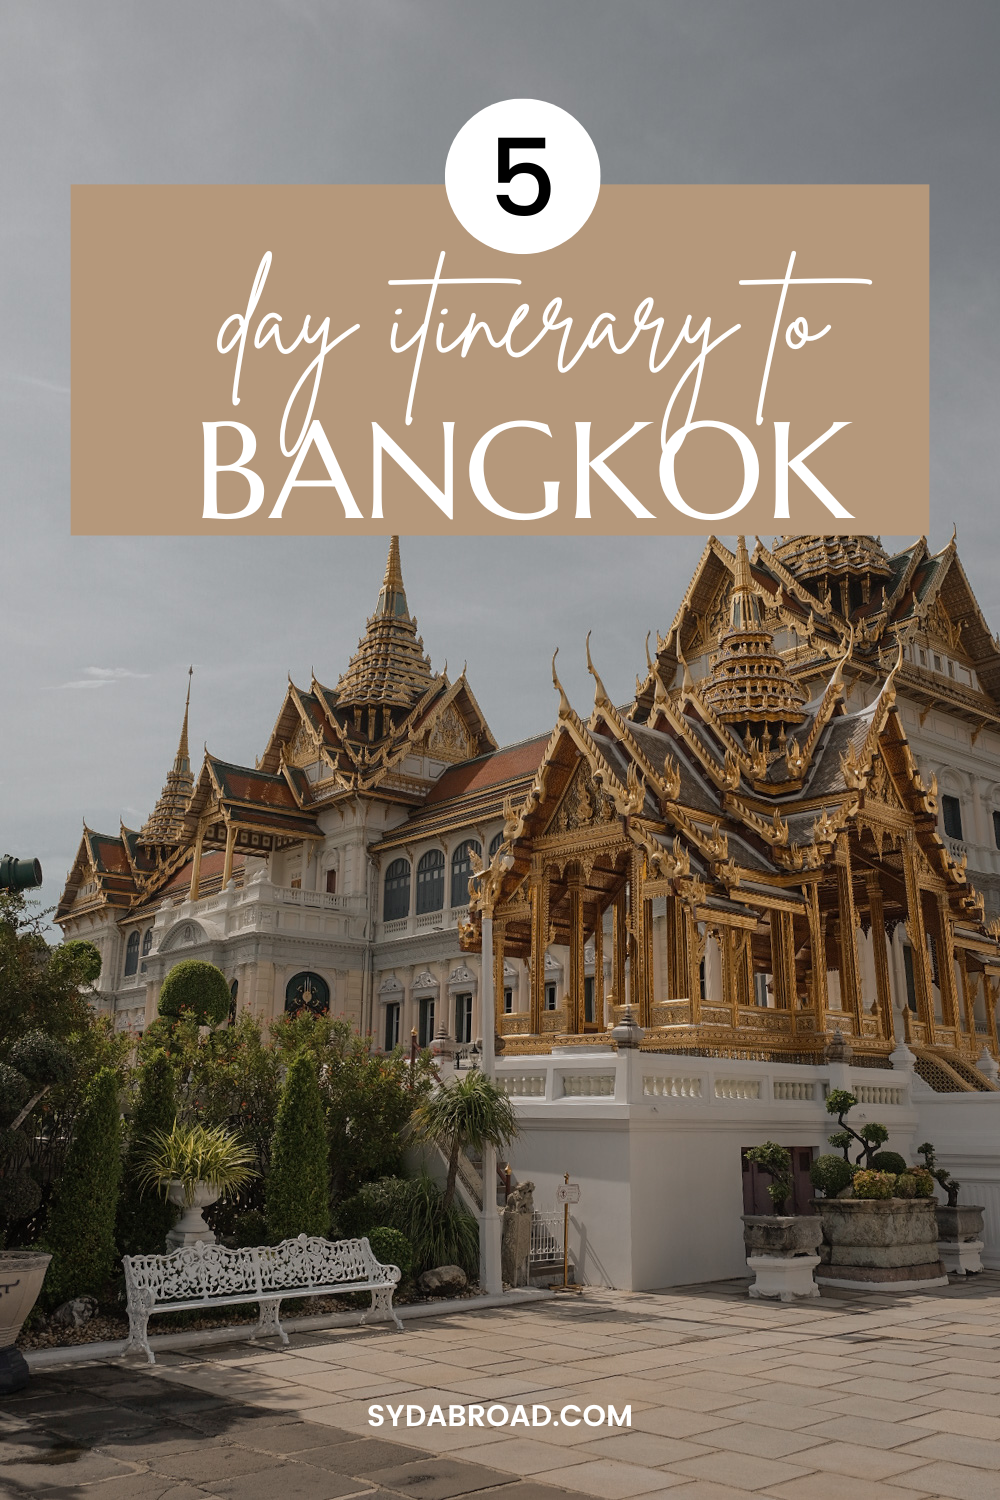 5 days itinerary for bangkok 